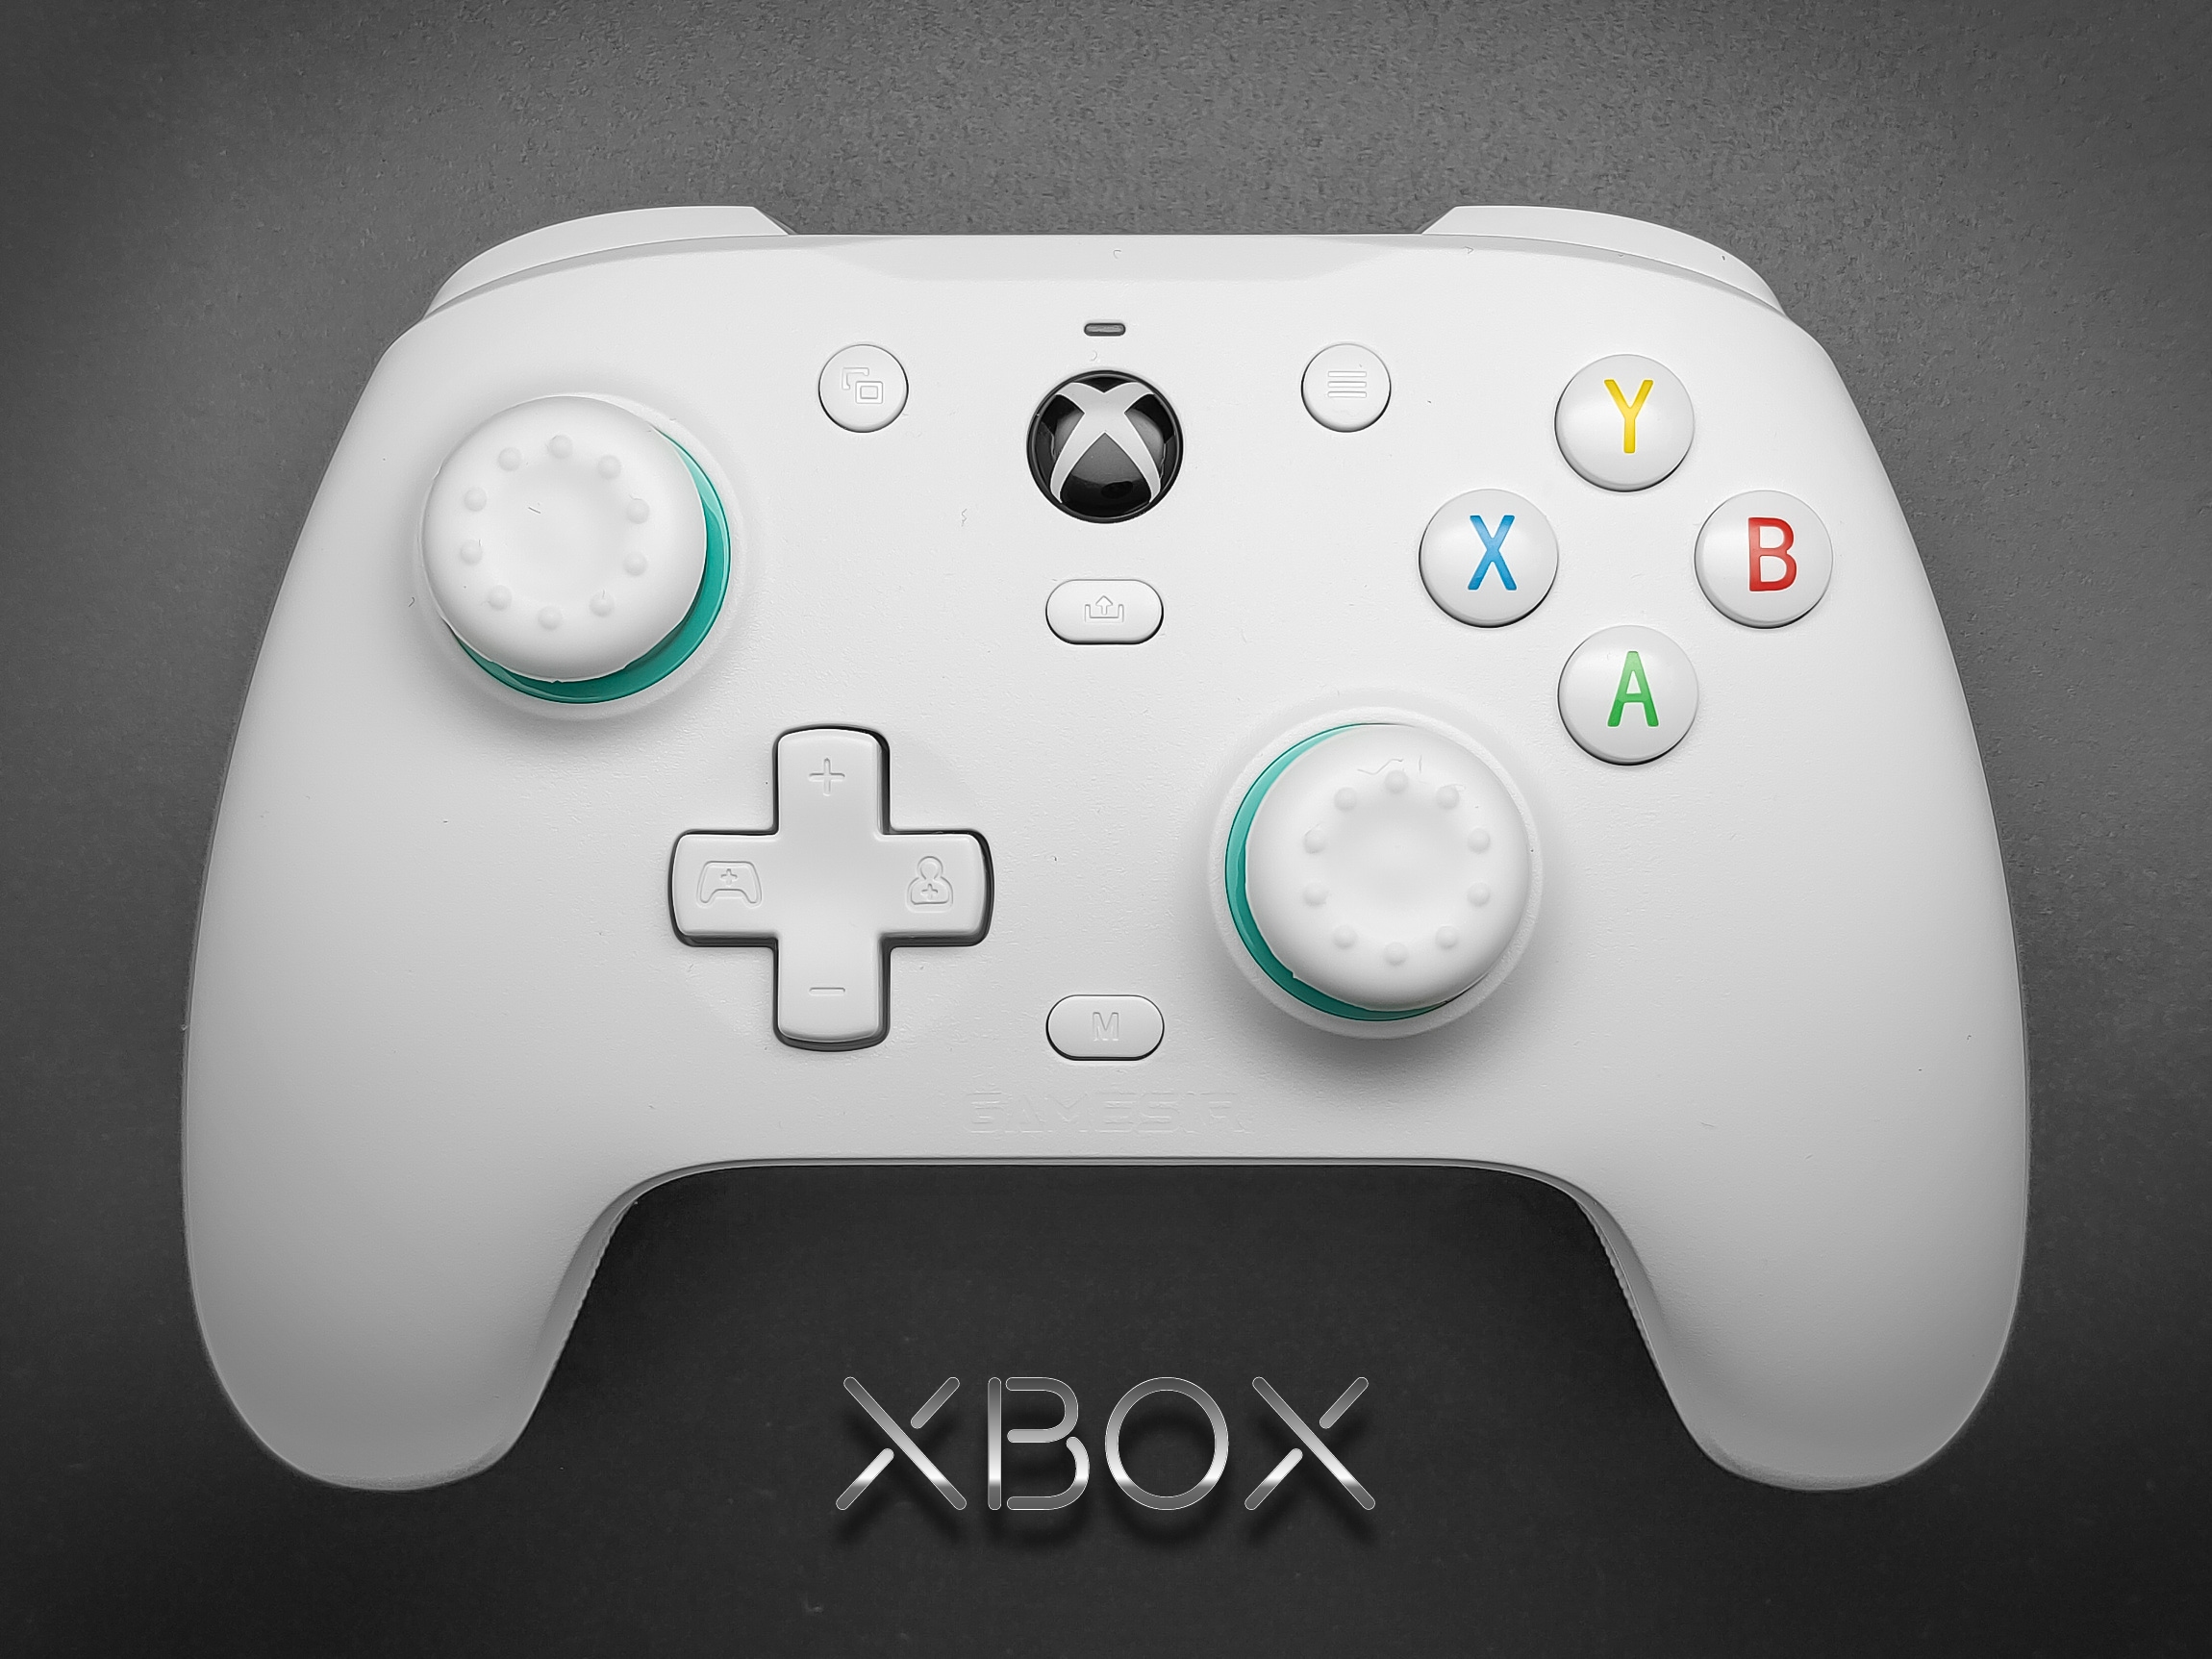 Внешние устройства, подключенные к Xbox Adaptive Controller, не отвечают | Xbox Support